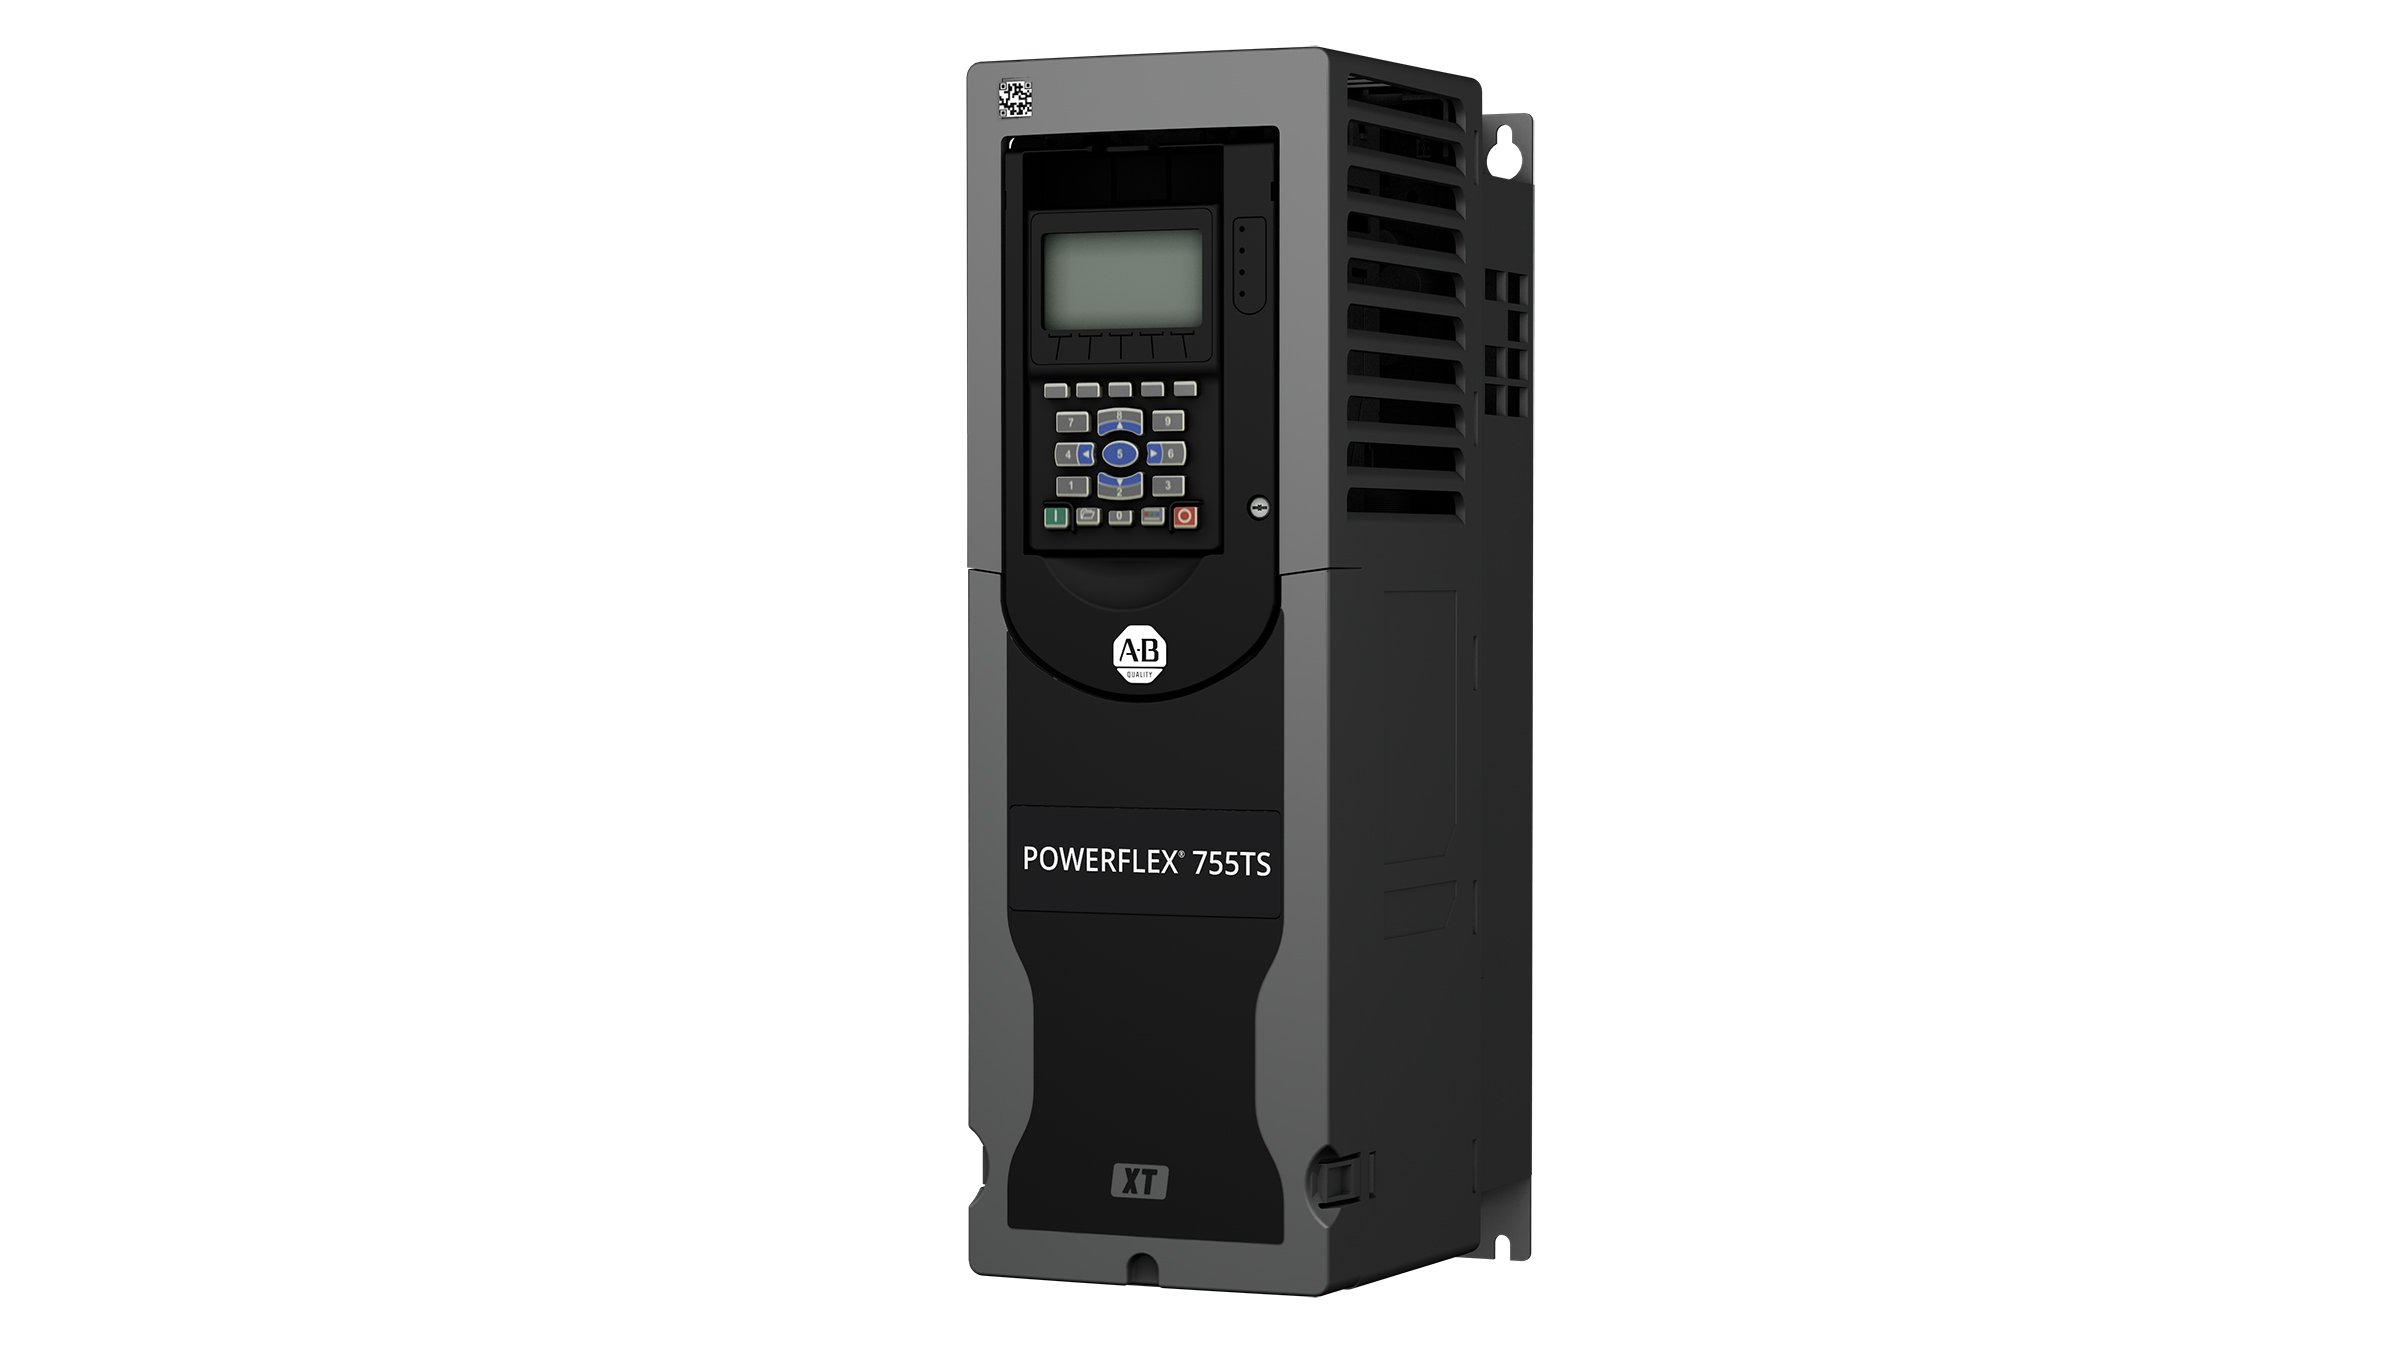 Inversor de frequência PowerFlex 755TS cinza escuro retangular com botões na frente e uma tela, bem como design XT especial para proteção contra gás corrosivo